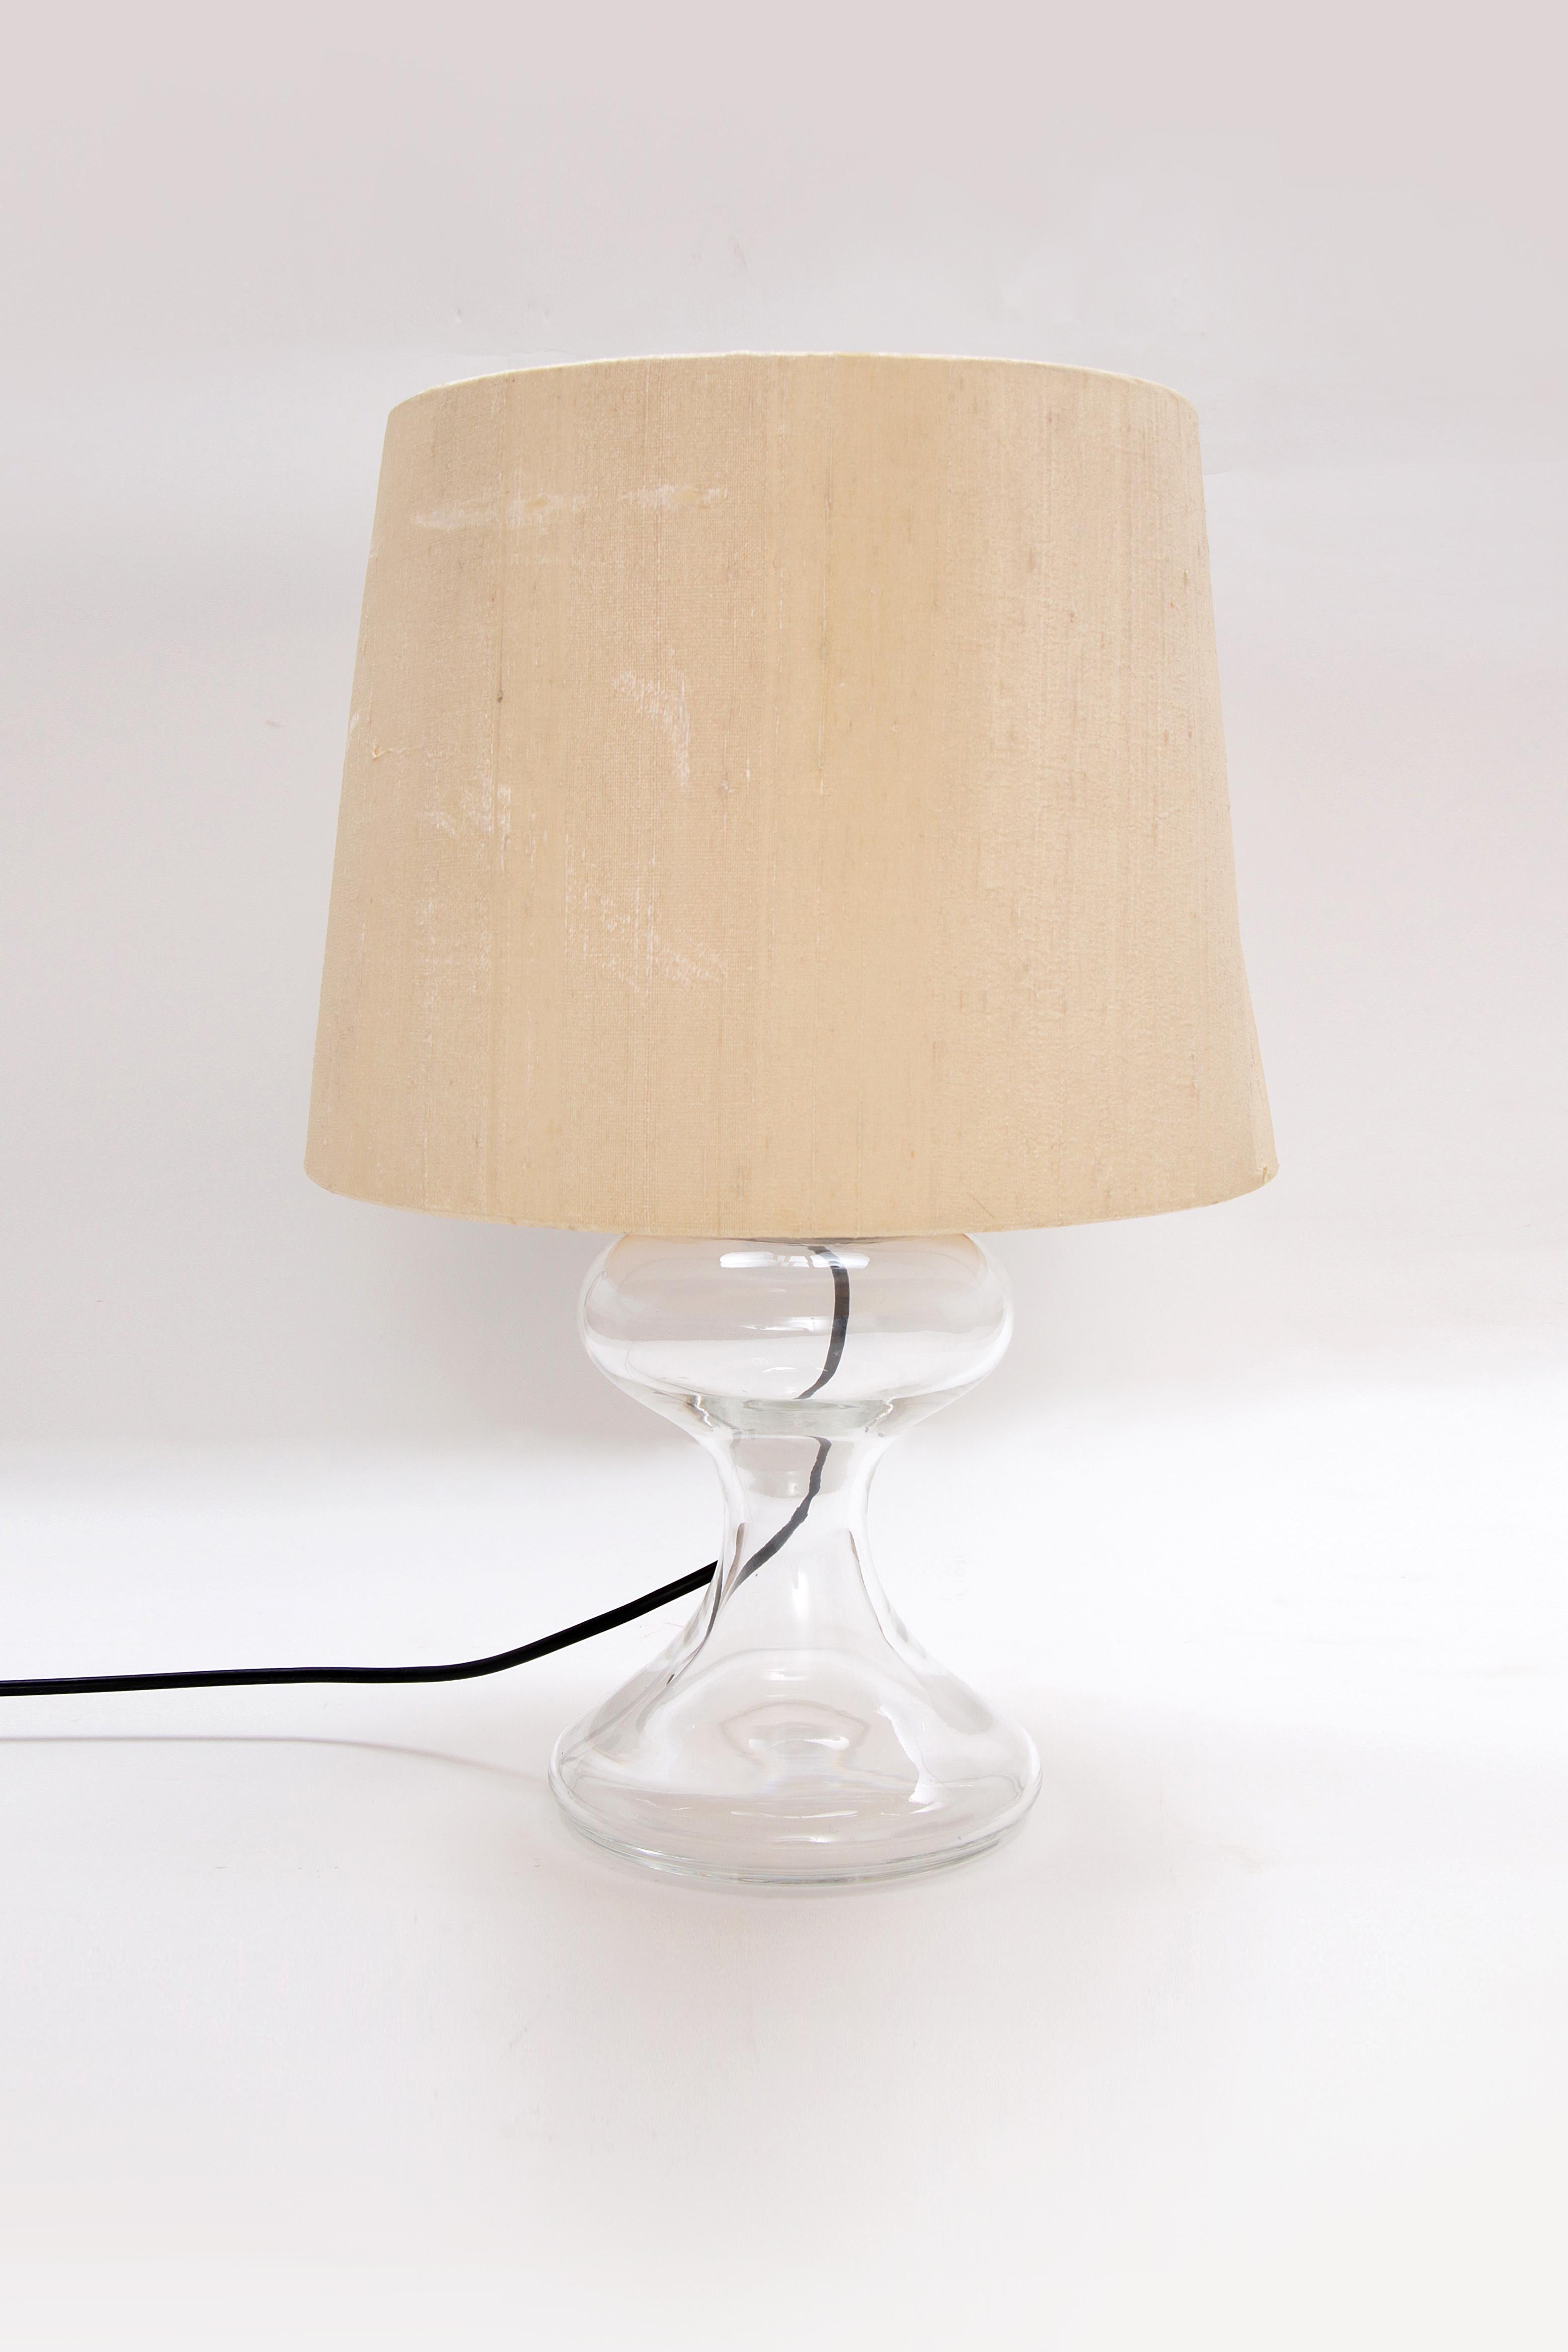 Ingo Maurer ML1 Lampe à poser - Design-Light soufflé à la bouche

Découvrez la beauté unique de la lampe de table ML1 d'Ingo Maurer, un chef-d'œuvre de verre soufflé à la main qui offre un éclairage d'ambiance à n'importe quelle pièce. Cette lampe